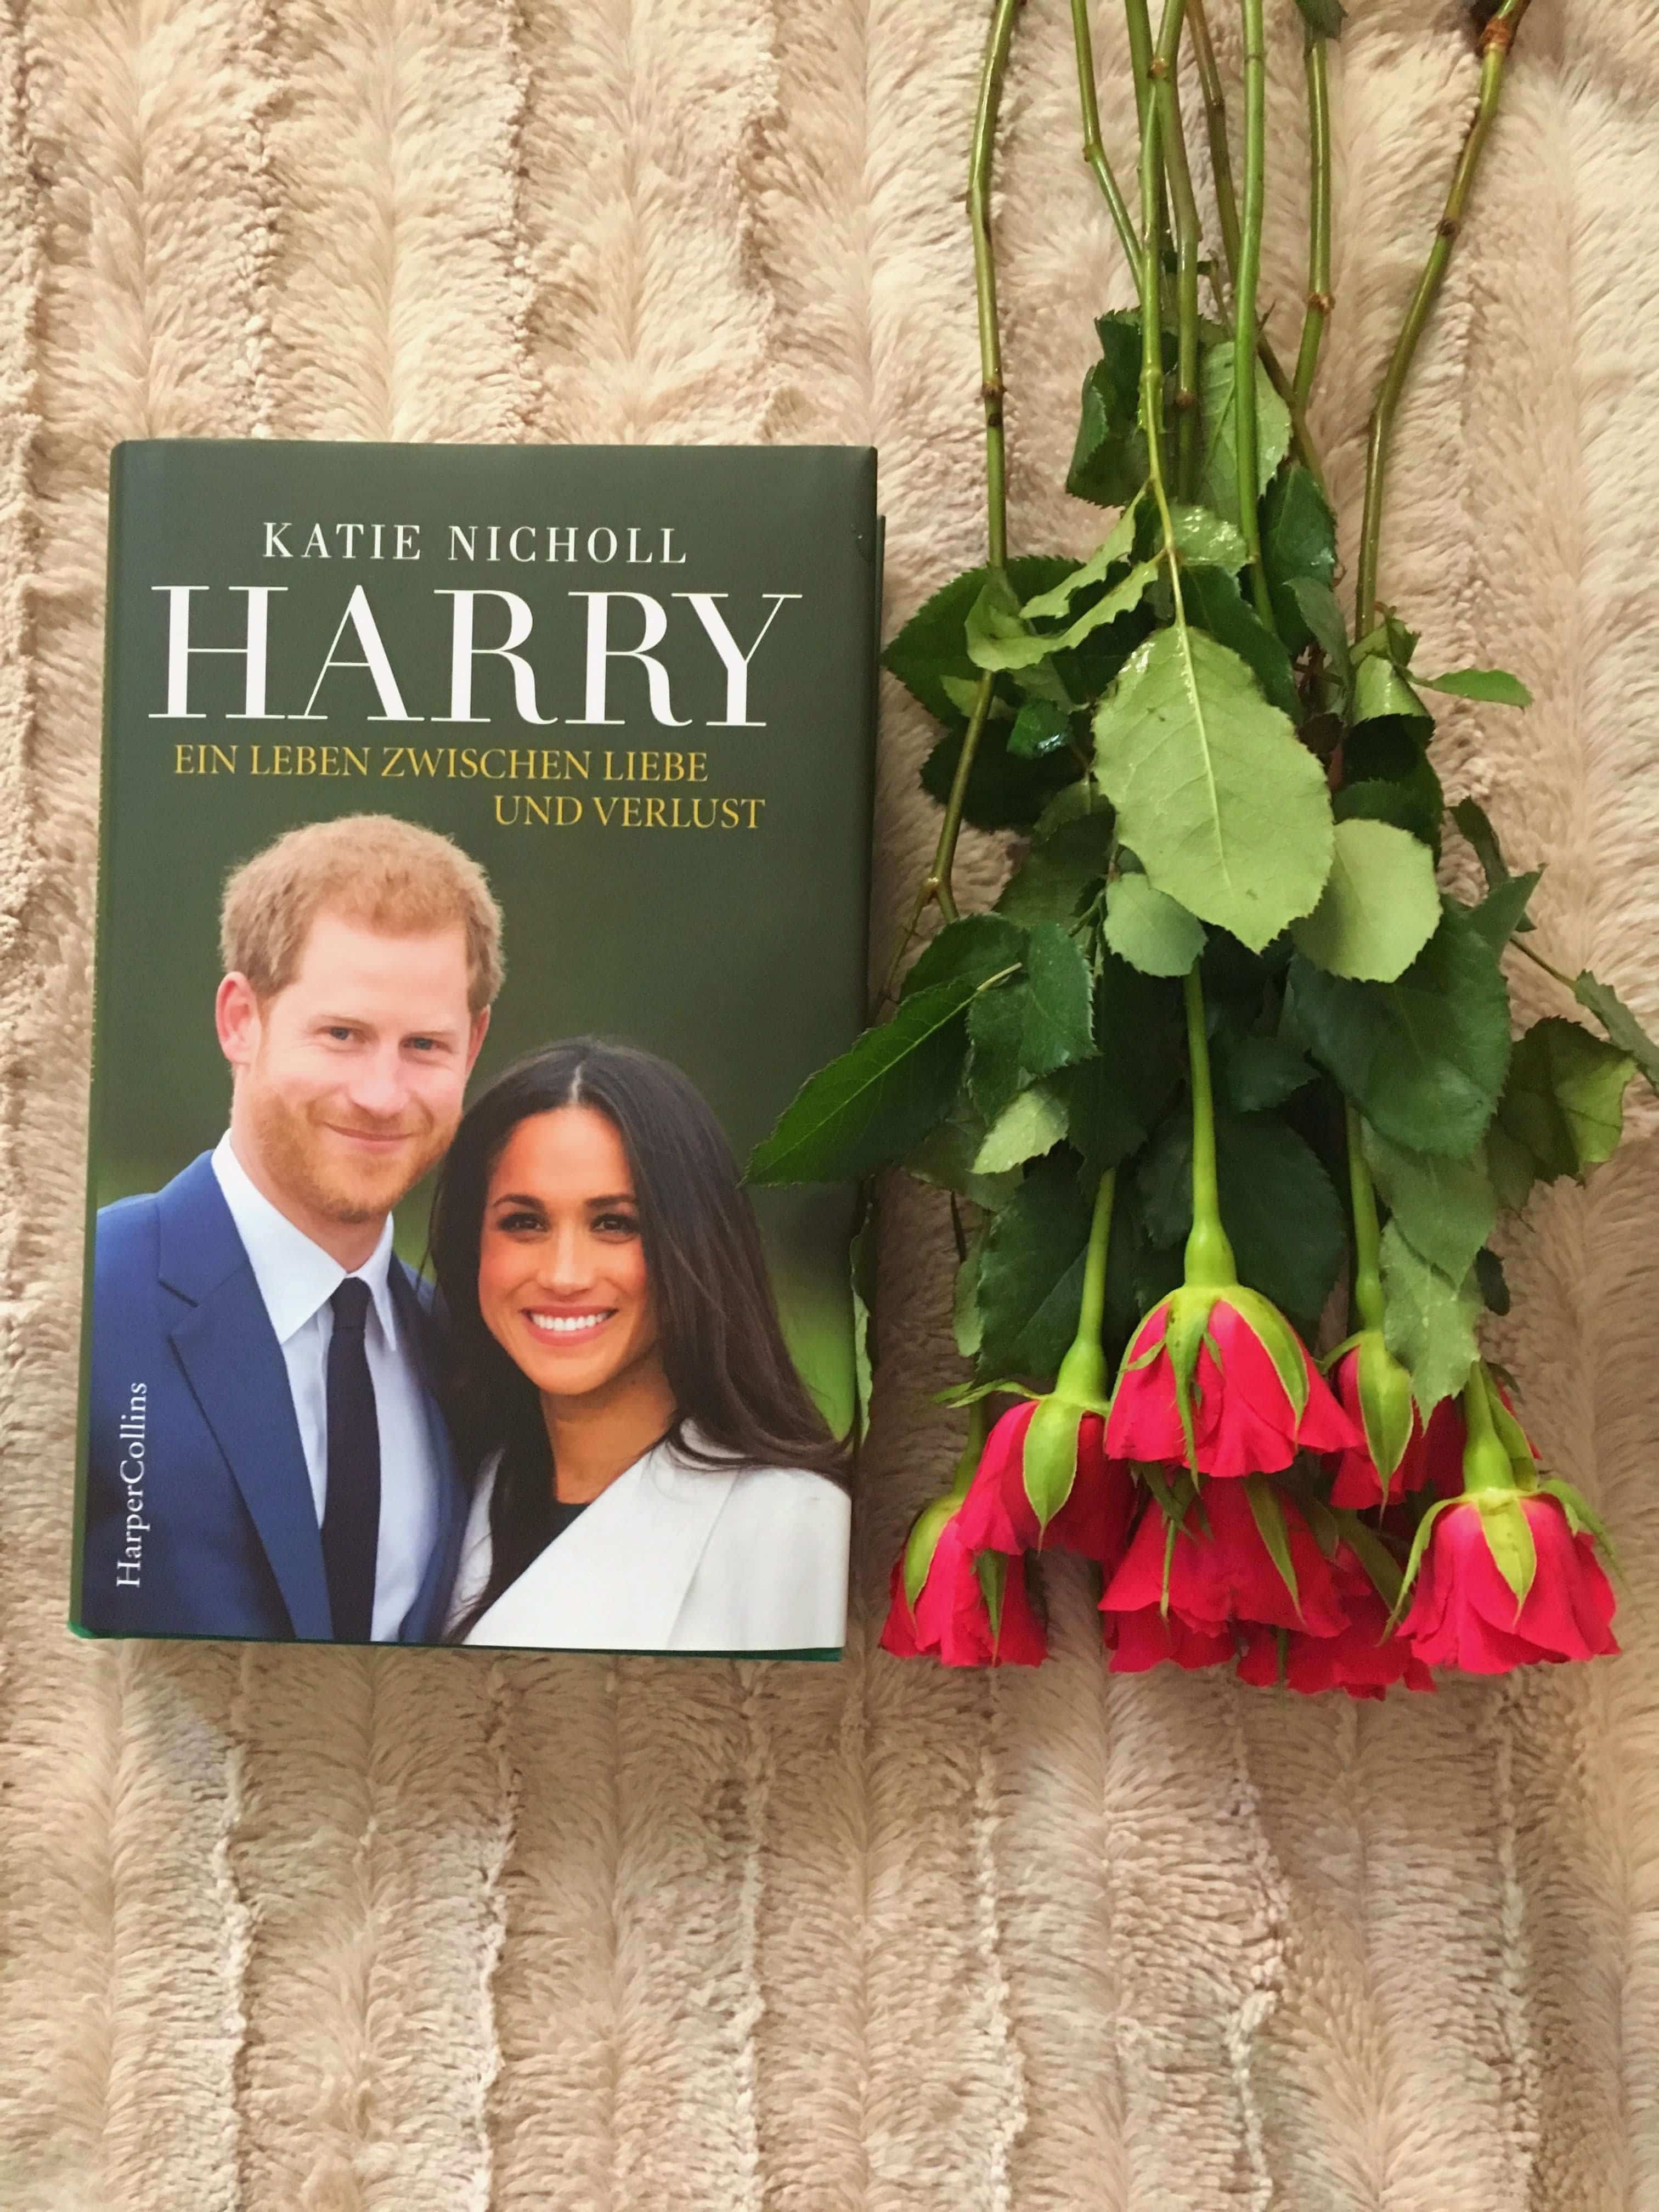 Heute stelle ich euch passend zur royalen Traumhochzeit das tolle Buch Harry - Ein Leben zwischen Liebe und Verlust von Katie Nicholl näher auf dem Blog vor